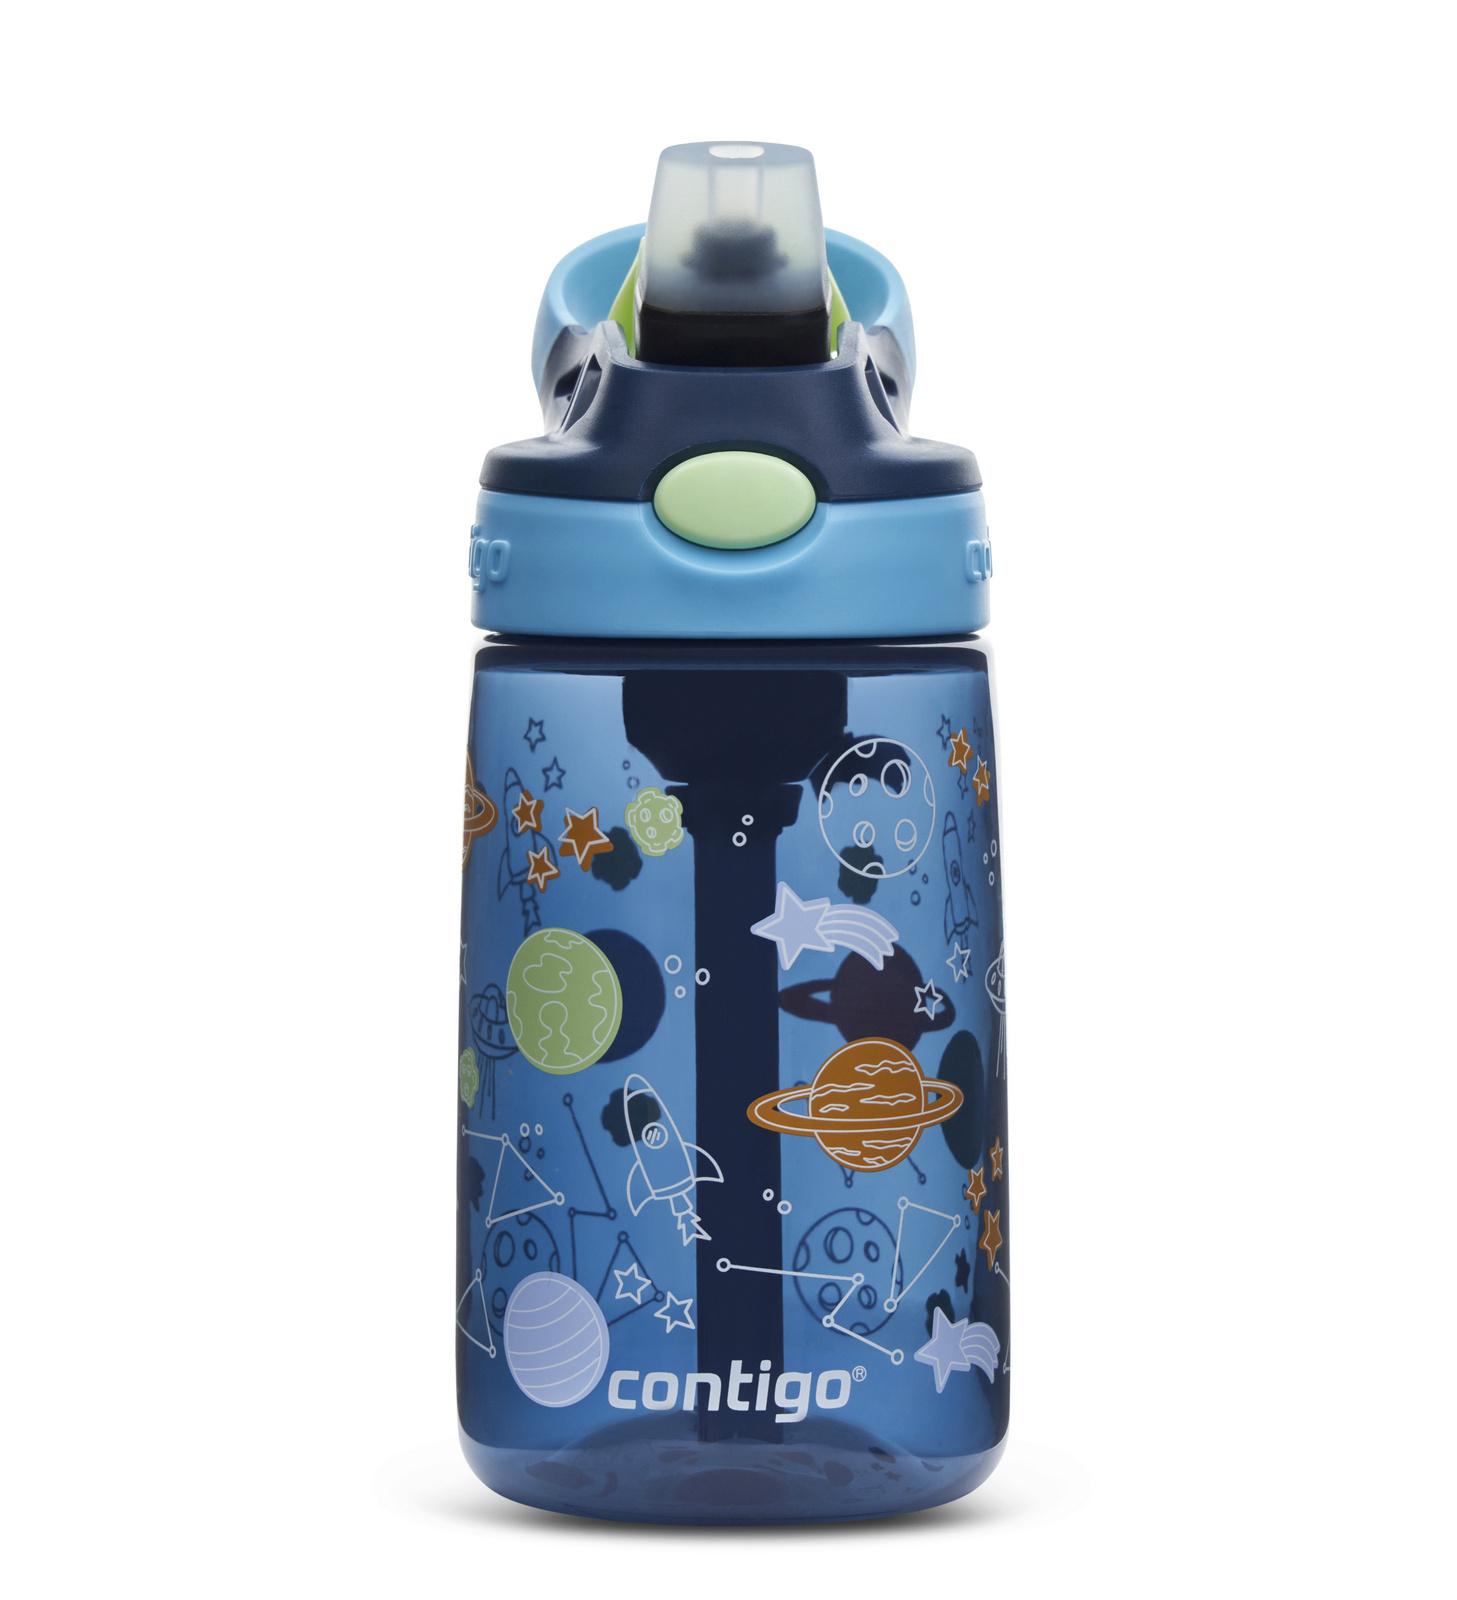 בקבוק ילדים קונטיגו עם קש בנפח 420 מ"ל - Contigo